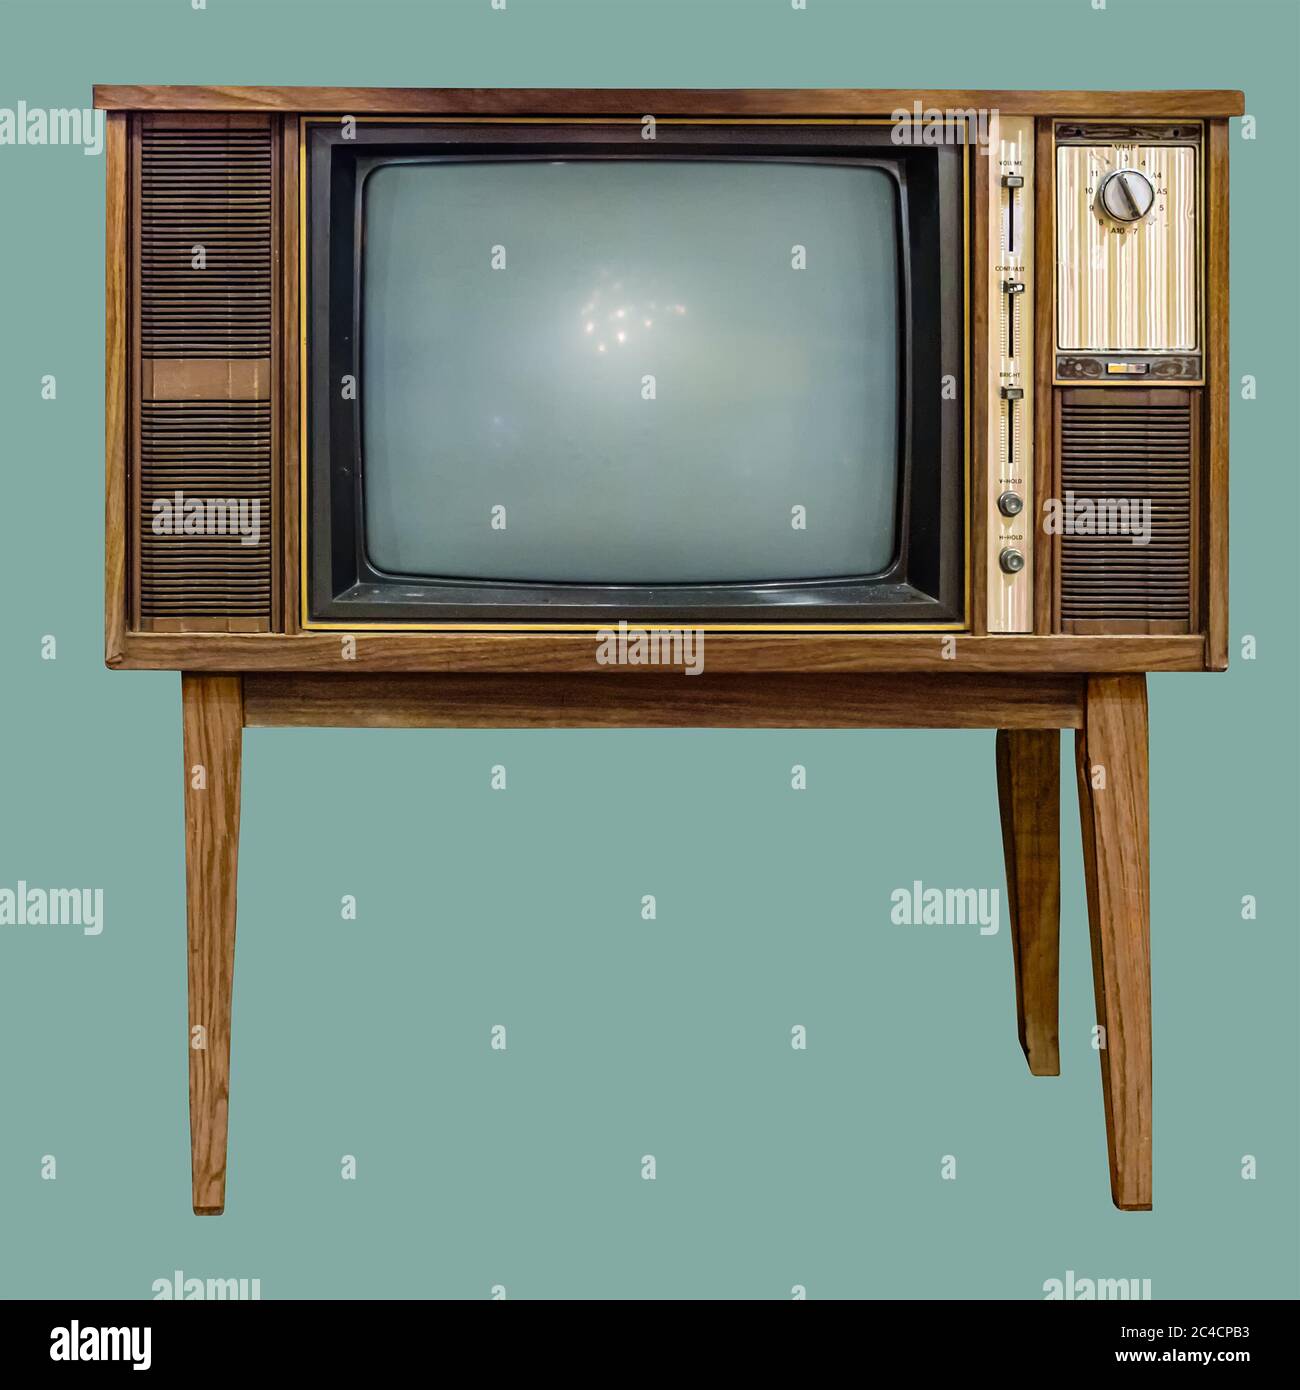 Vintage TV : alte Retro-Fernseher in Holzschrank auf isoliertem grünen  Hintergrund mit Clipping-Pfad Stockfotografie - Alamy